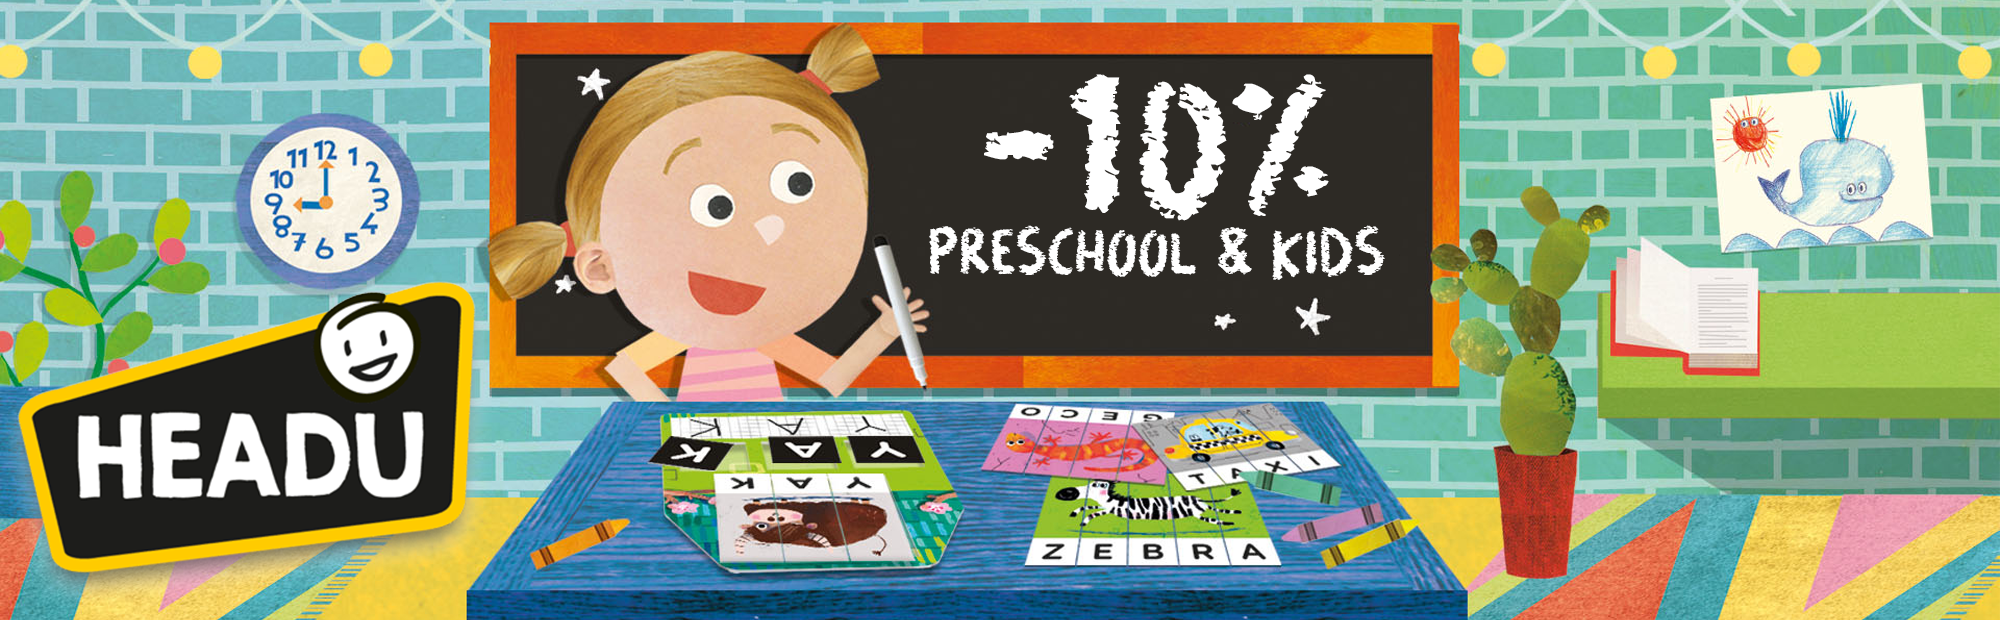 Banner Headu - In promozione le linee Preschool & Kids Educational